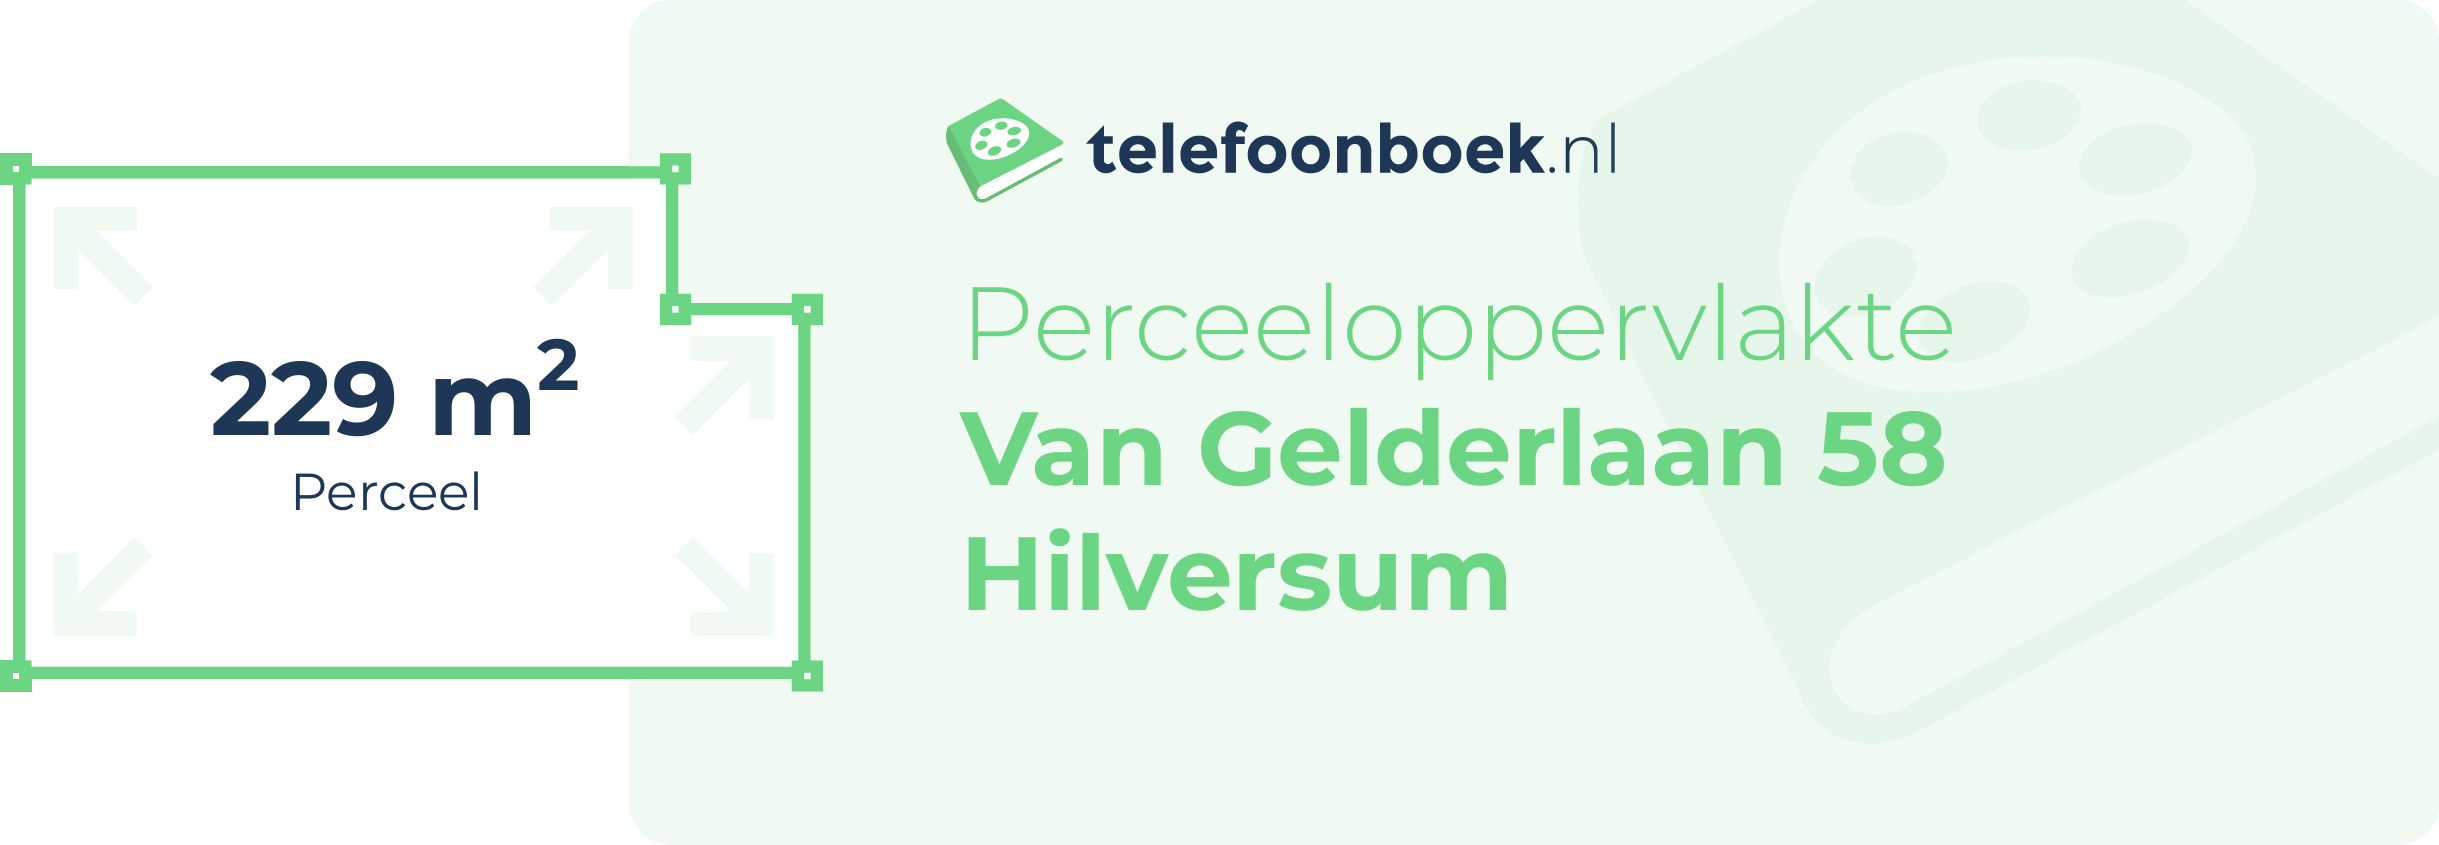 Perceeloppervlakte Van Gelderlaan 58 Hilversum